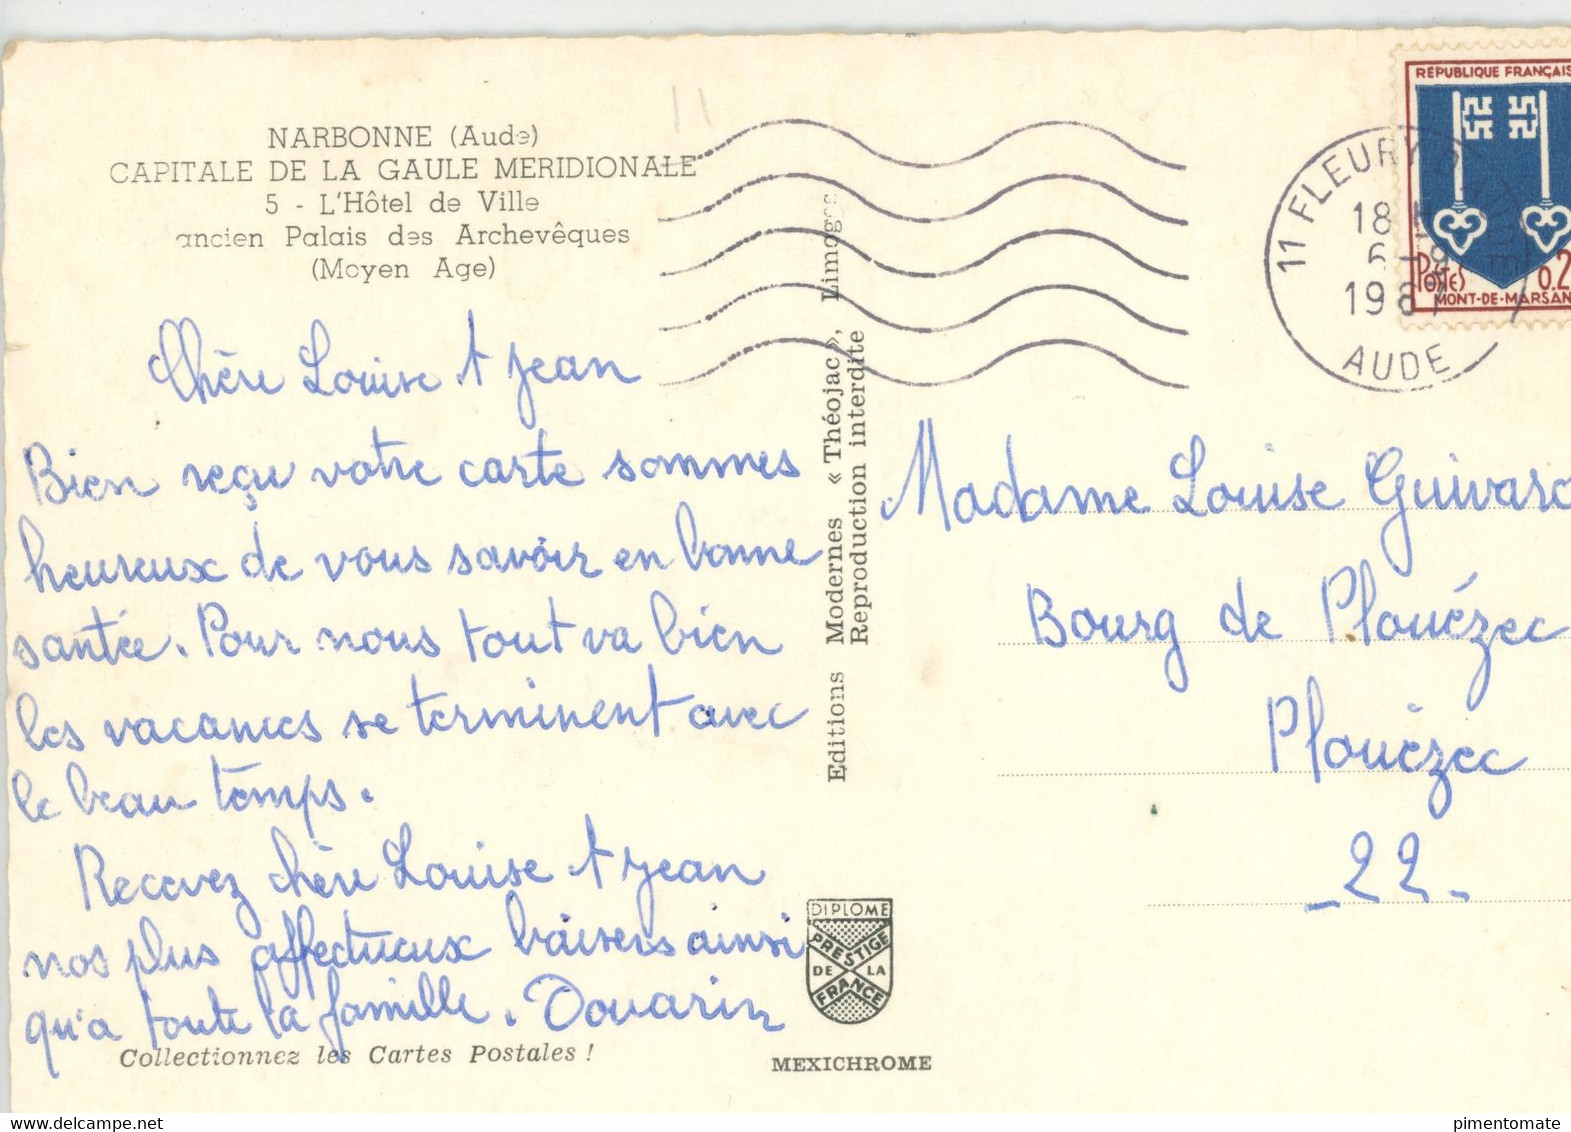 NARBONNE L'HOTEL DE VILLE ANCIEN PALAIS DES ARCHEVEQUES 1987 - Narbonne